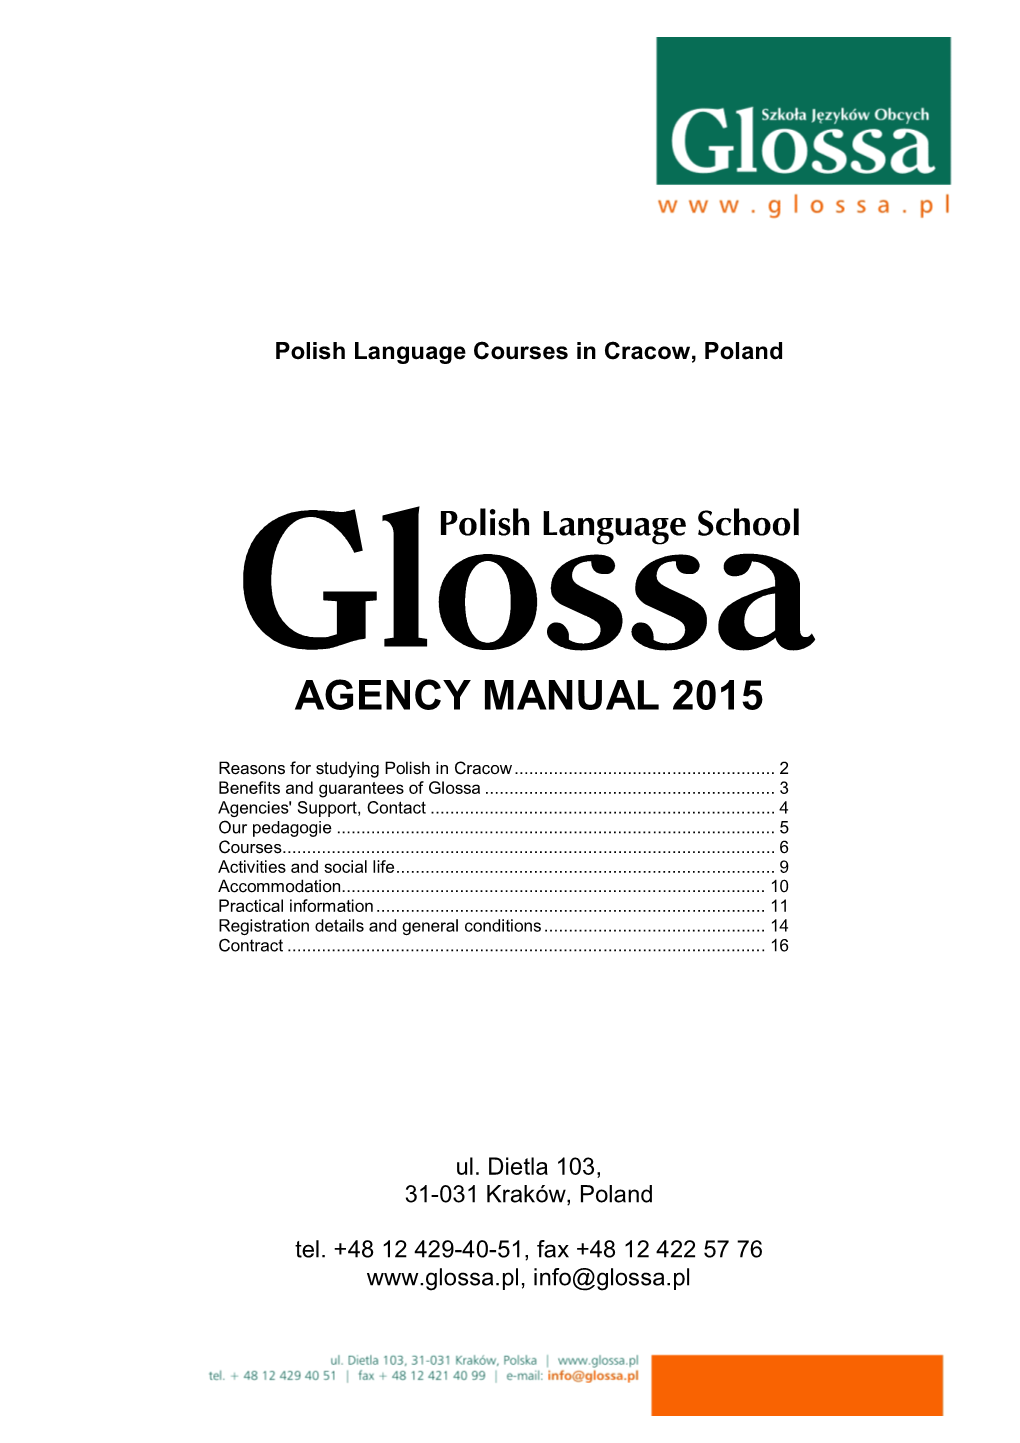 Agency Manual 2015